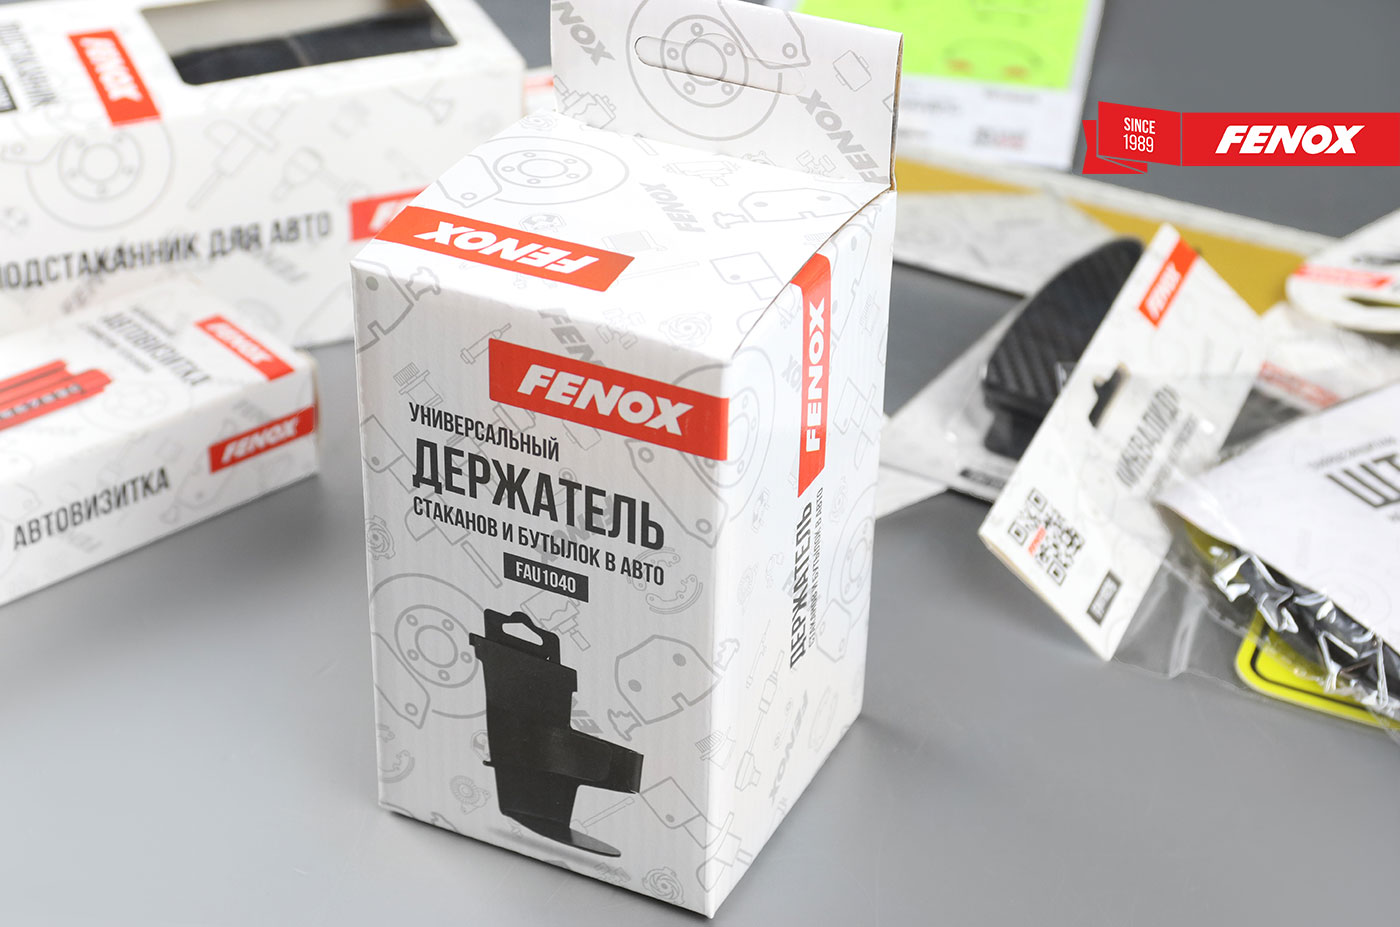 Удобство применения - автоаксессуары FENOX оснащены удобными креплениями